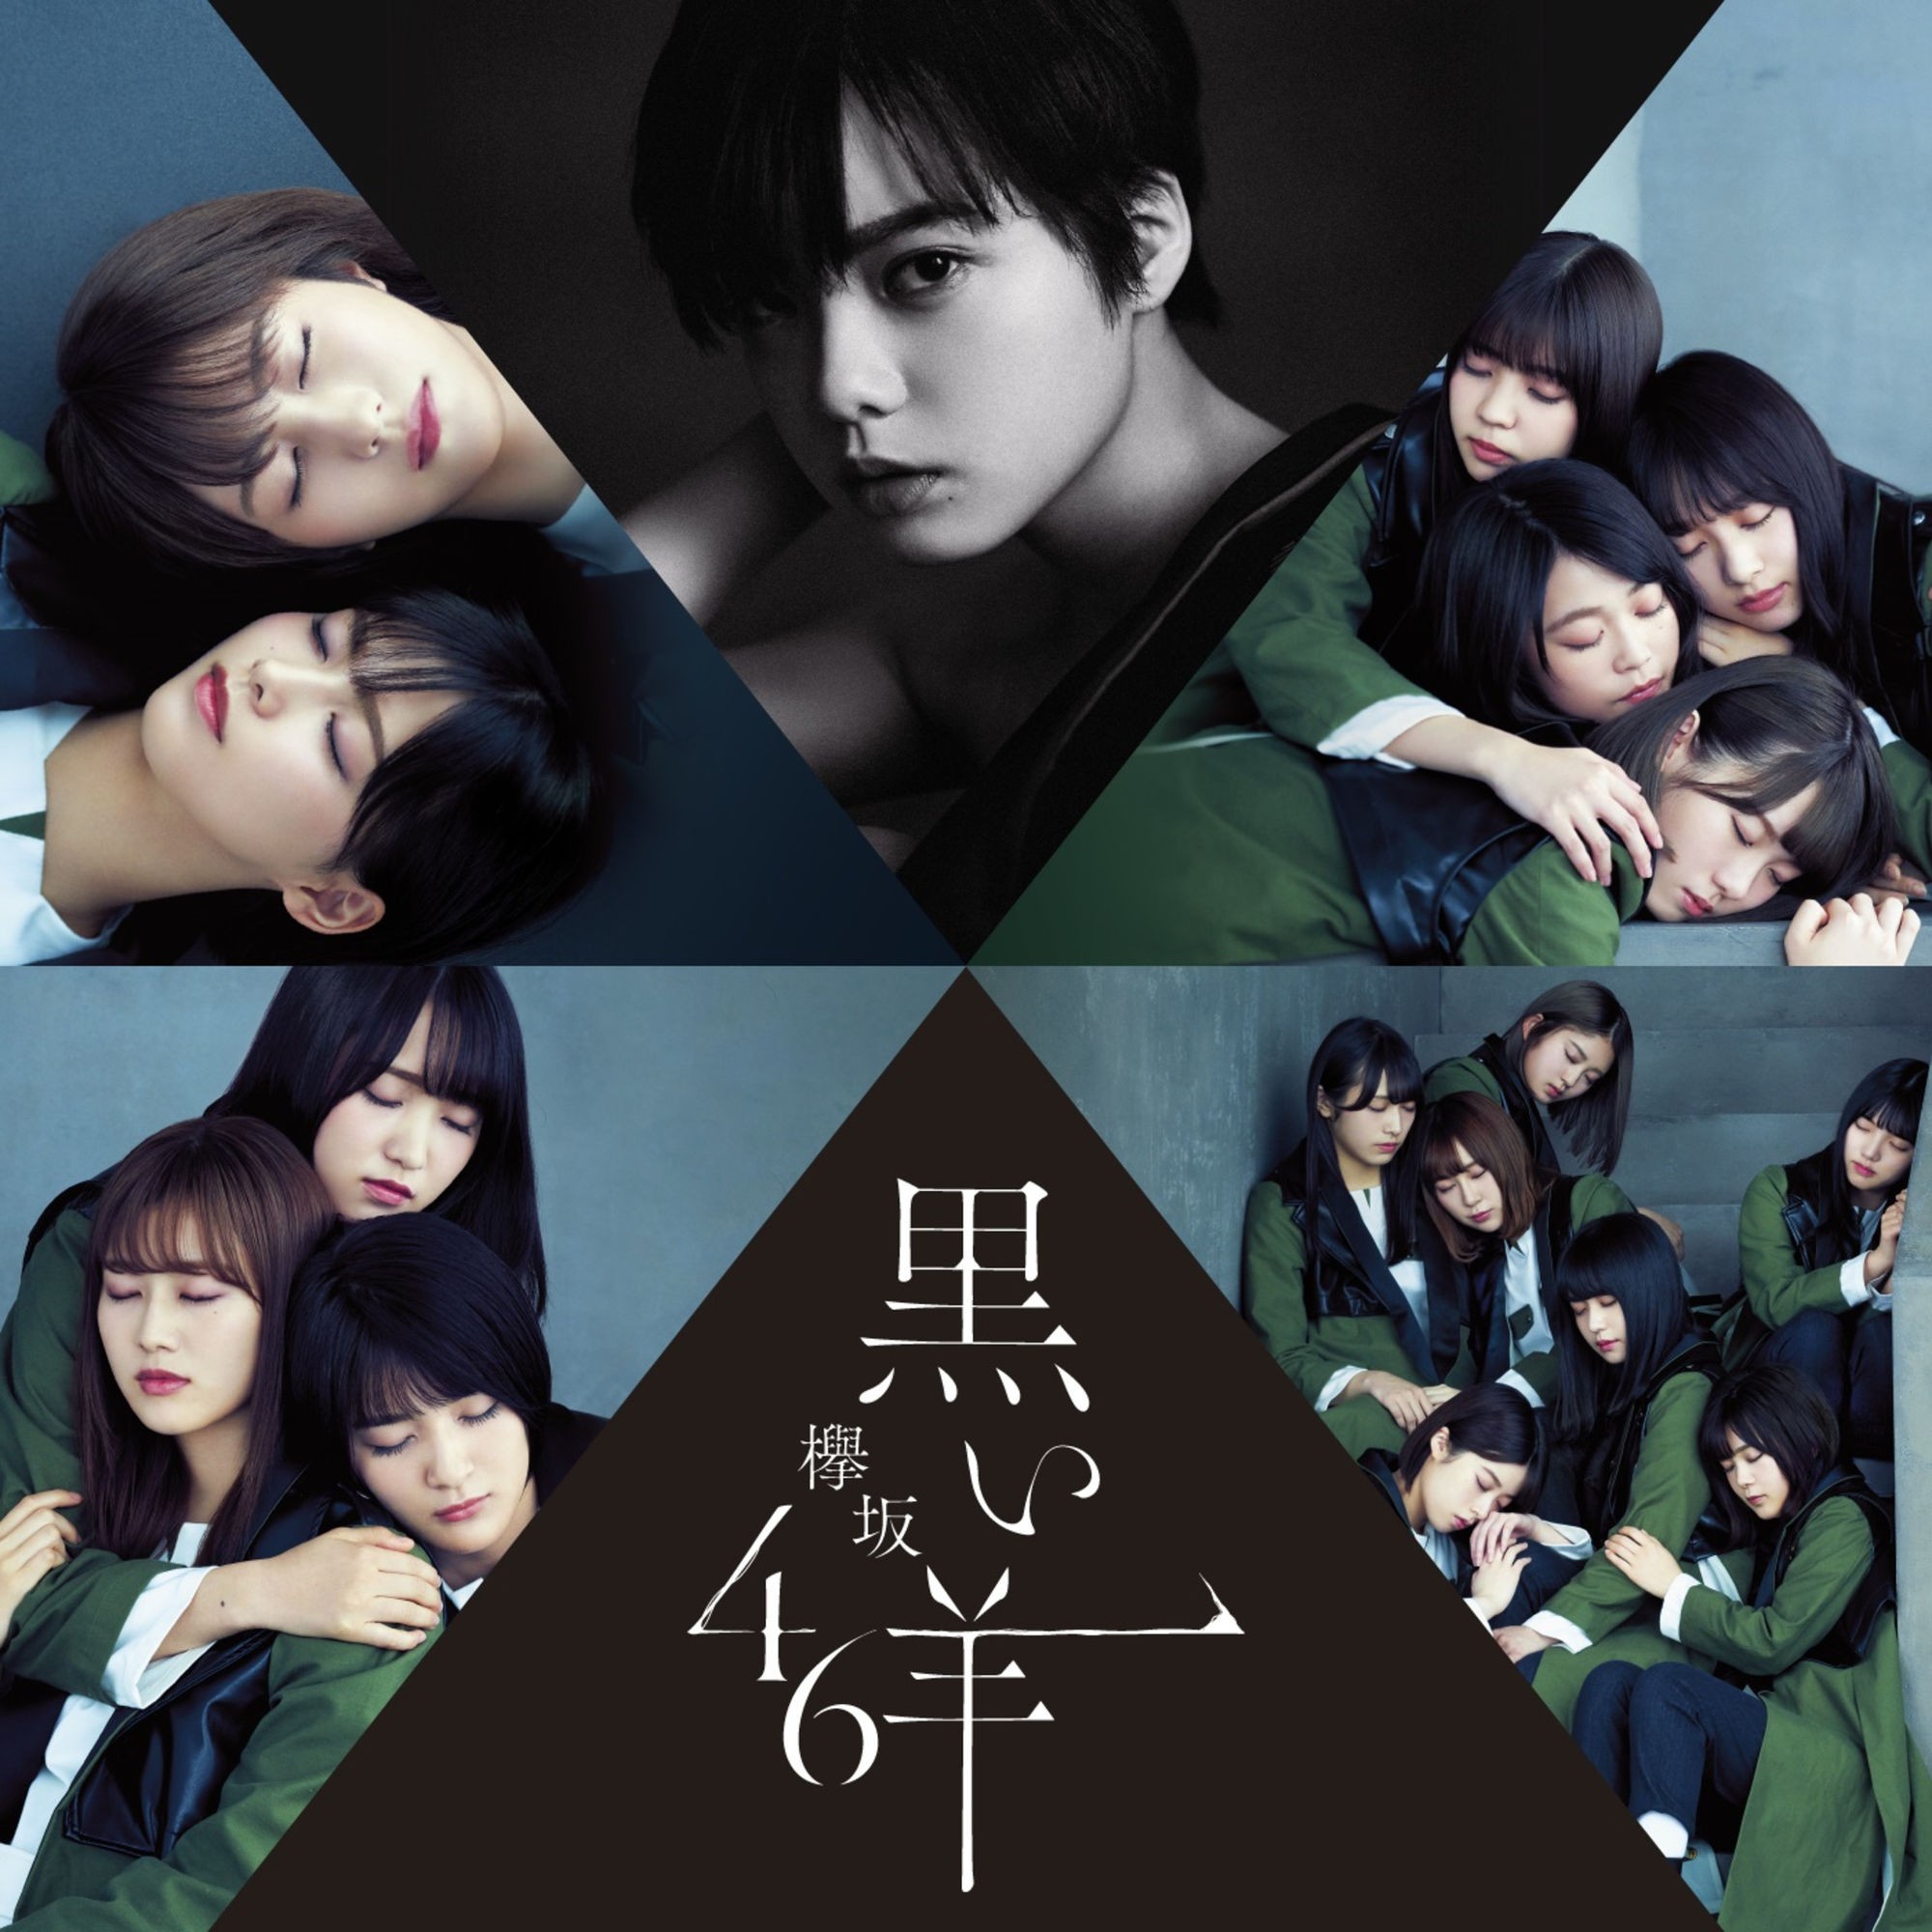 欅坂46 (Keyakizaka46) – 黒い羊 [FLAC + MP3 320 / CD] [2019.02.27]